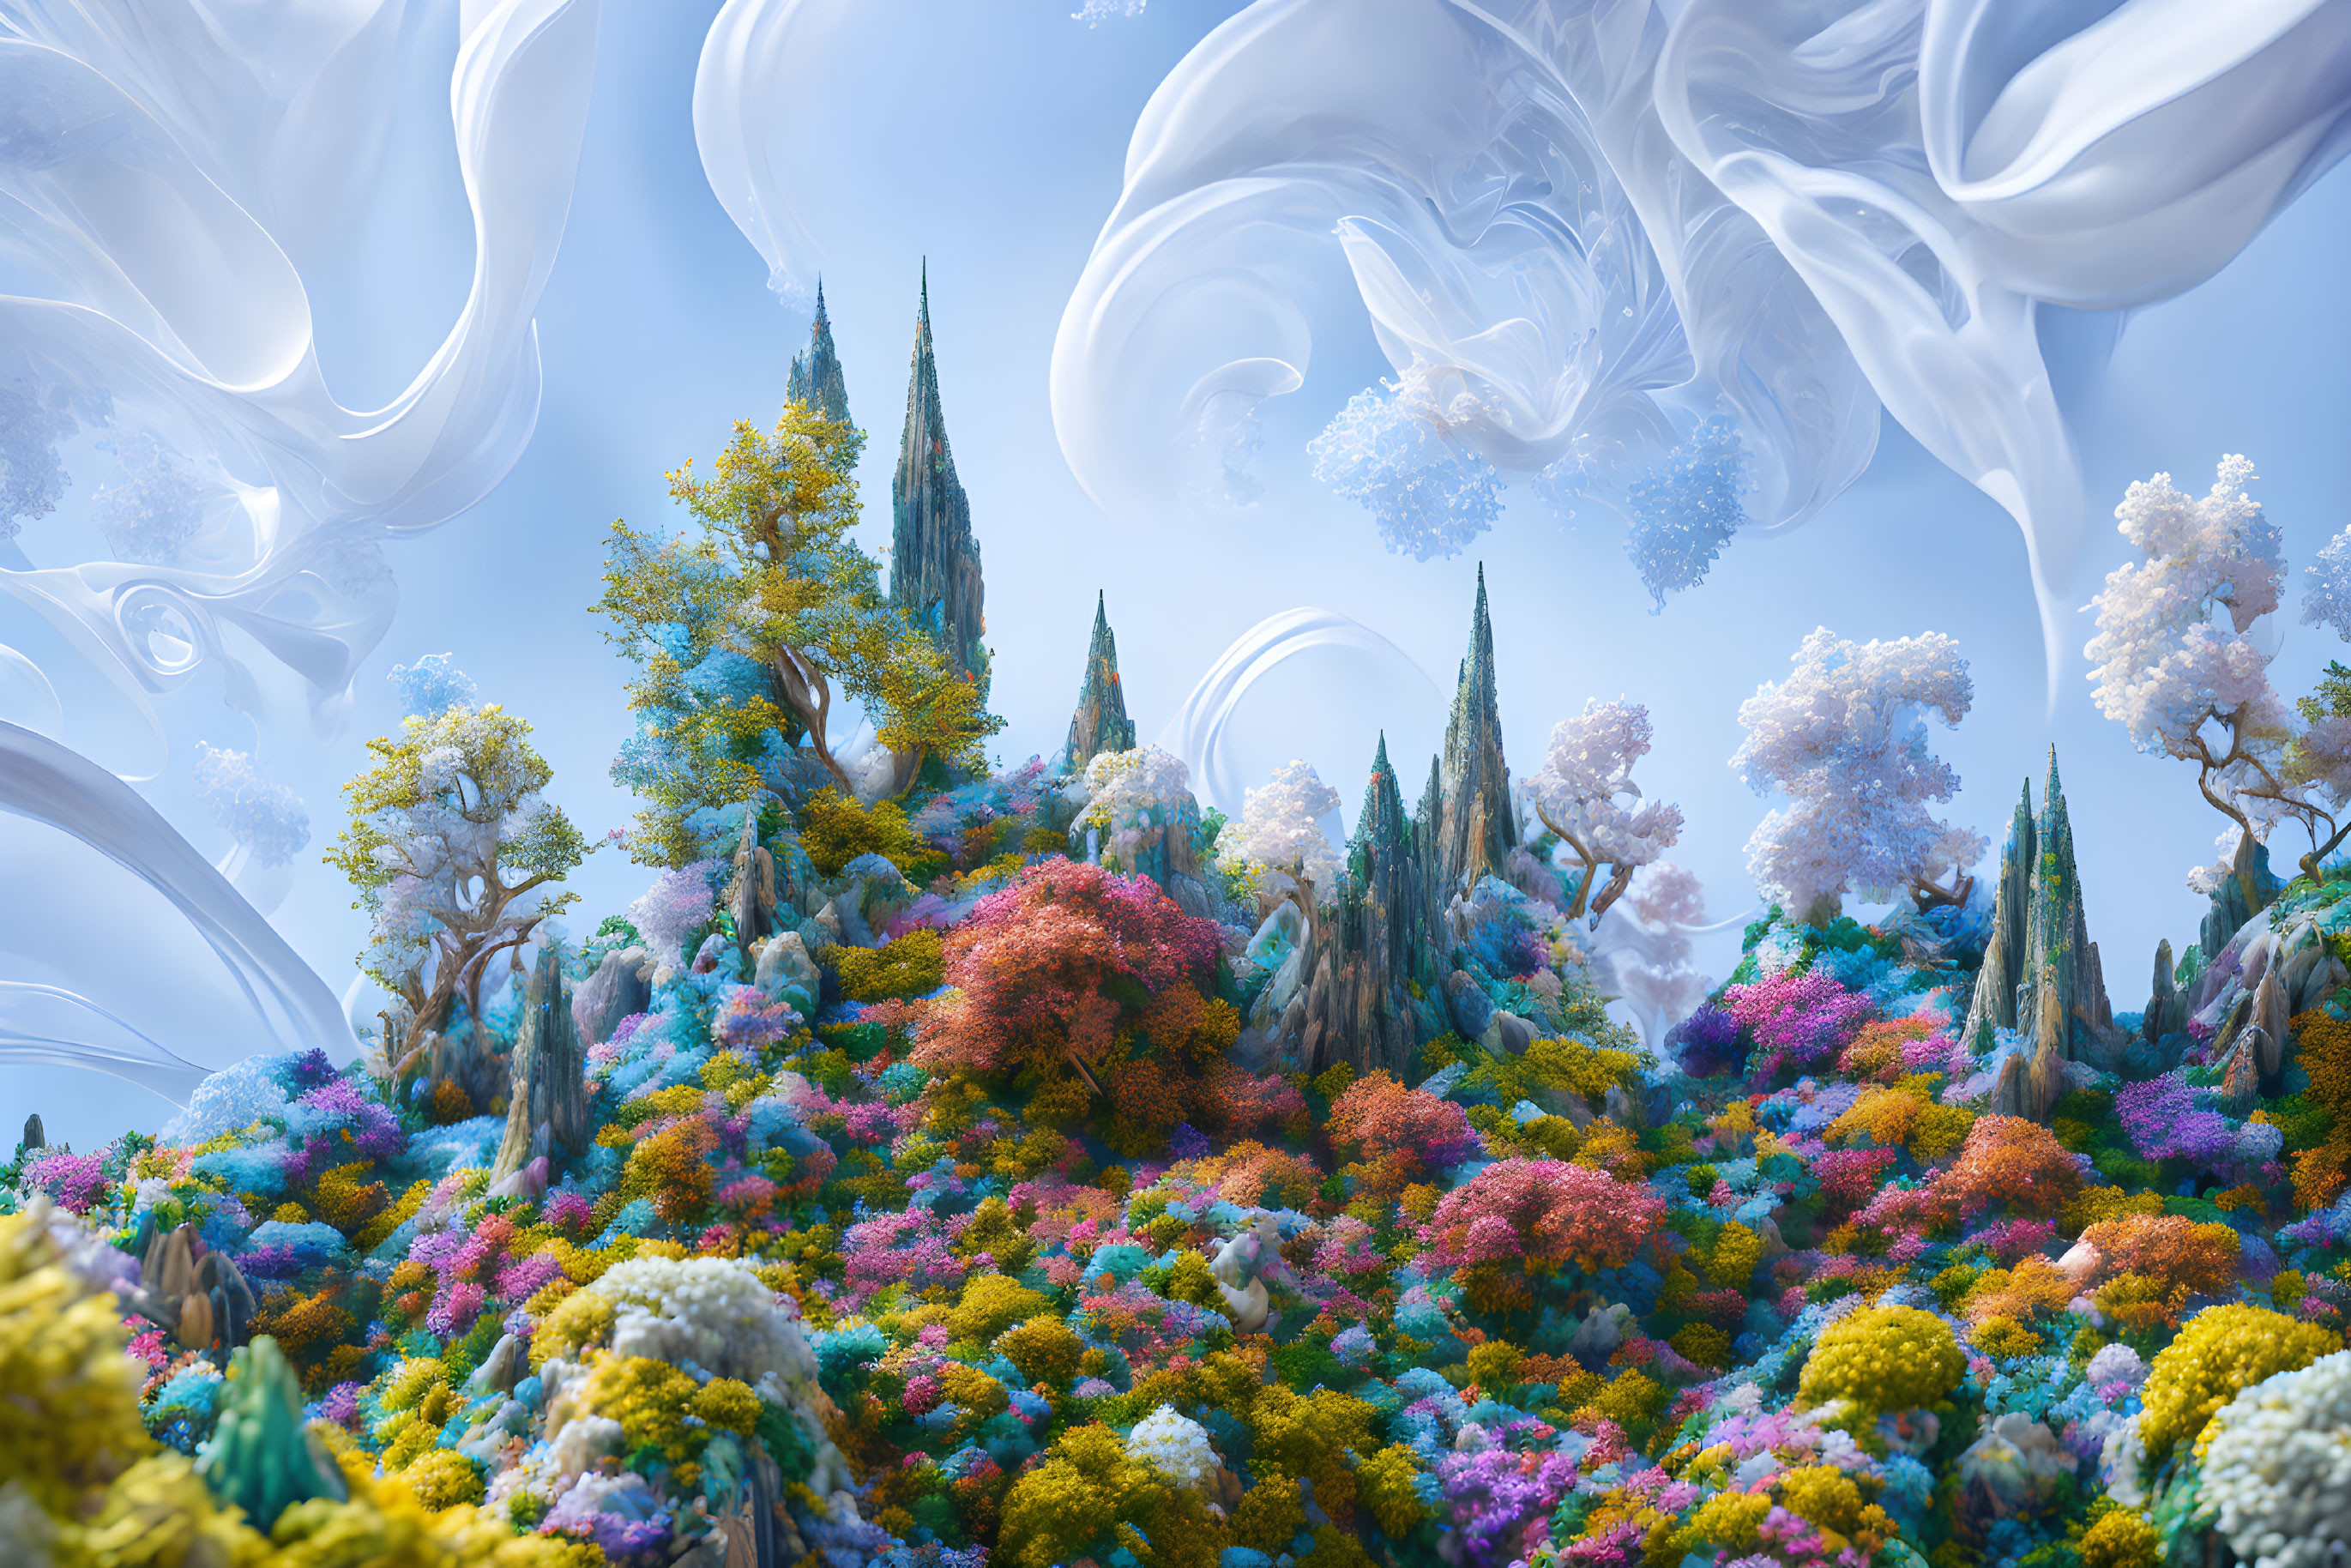 Whimsical Wonderland: A Surreal Landscape